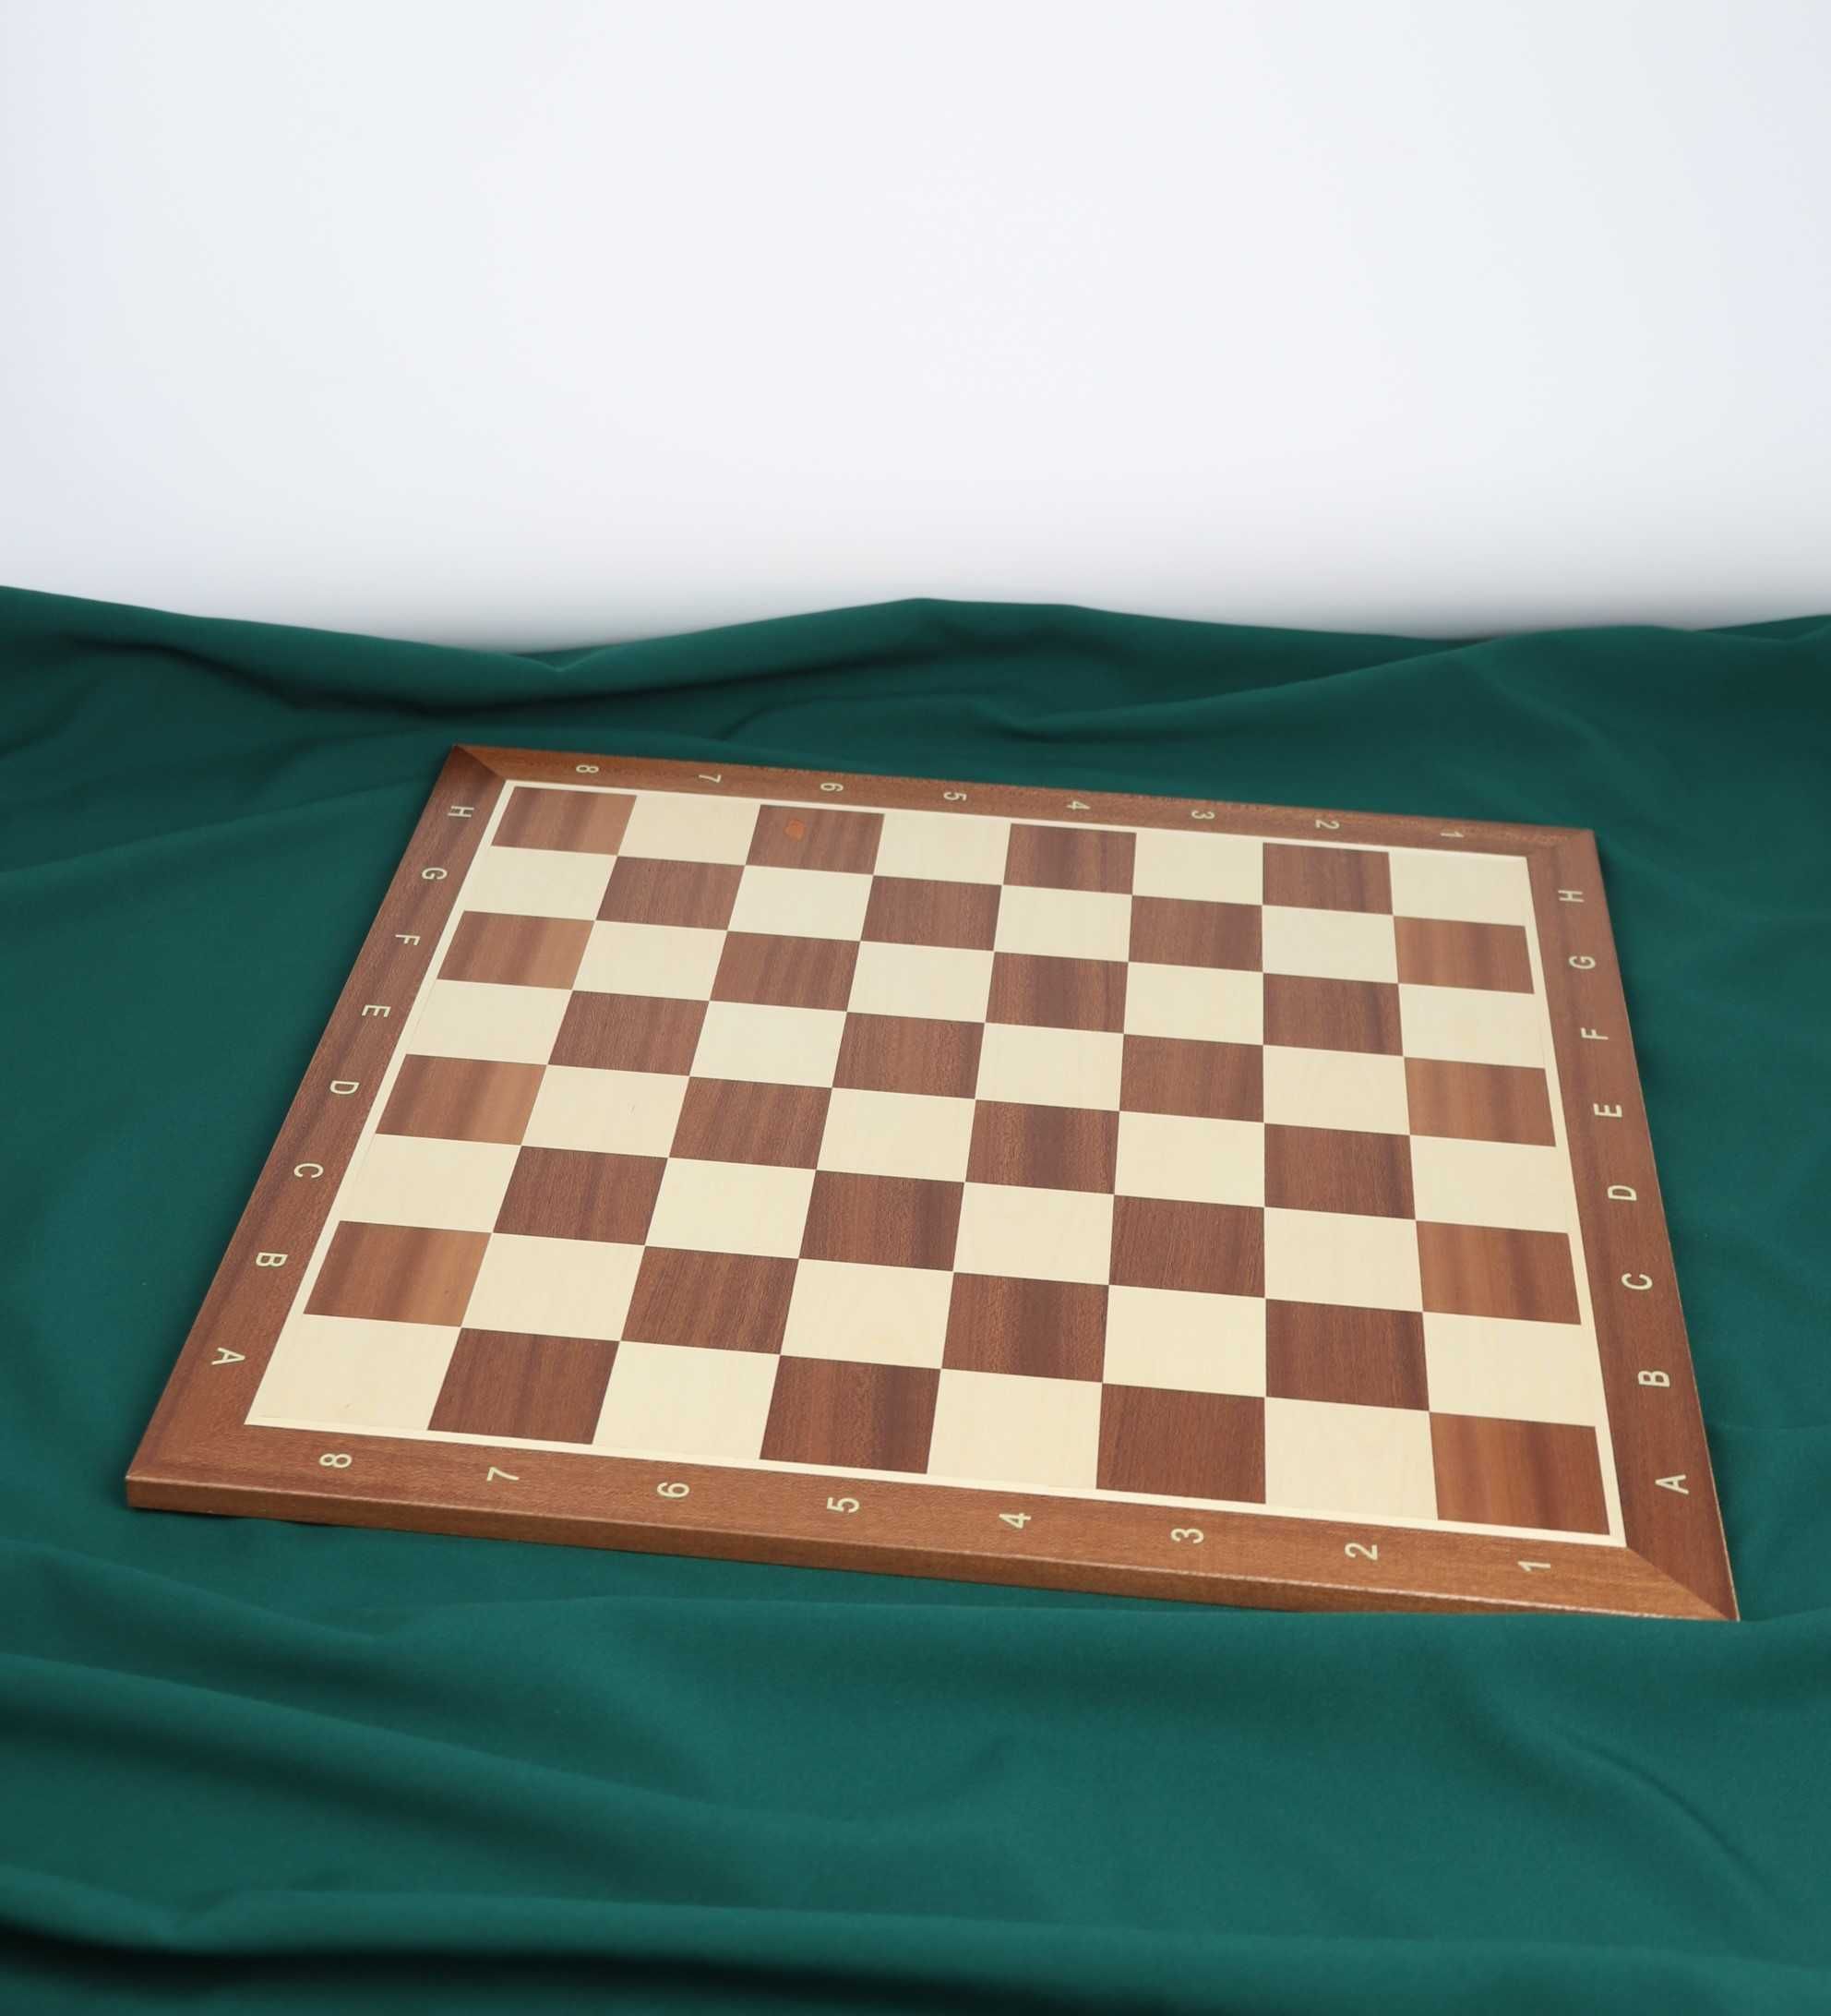 Deska turniejowa szachownica drewno mahoń jawor